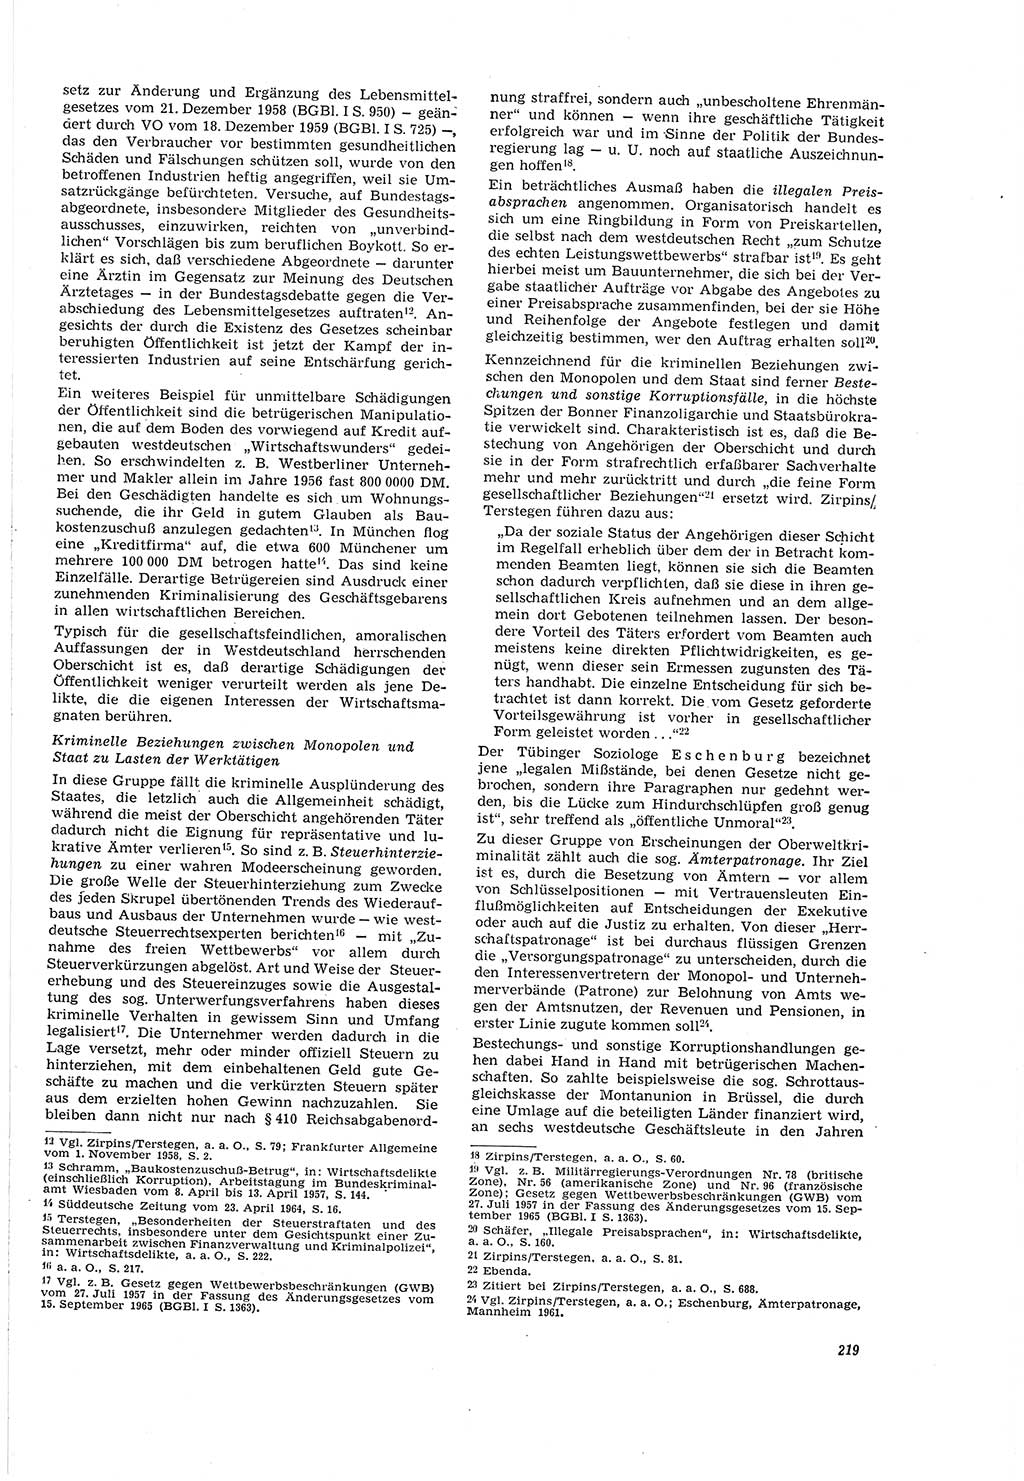 Neue Justiz (NJ), Zeitschrift für Recht und Rechtswissenschaft [Deutsche Demokratische Republik (DDR)], 20. Jahrgang 1966, Seite 219 (NJ DDR 1966, S. 219)